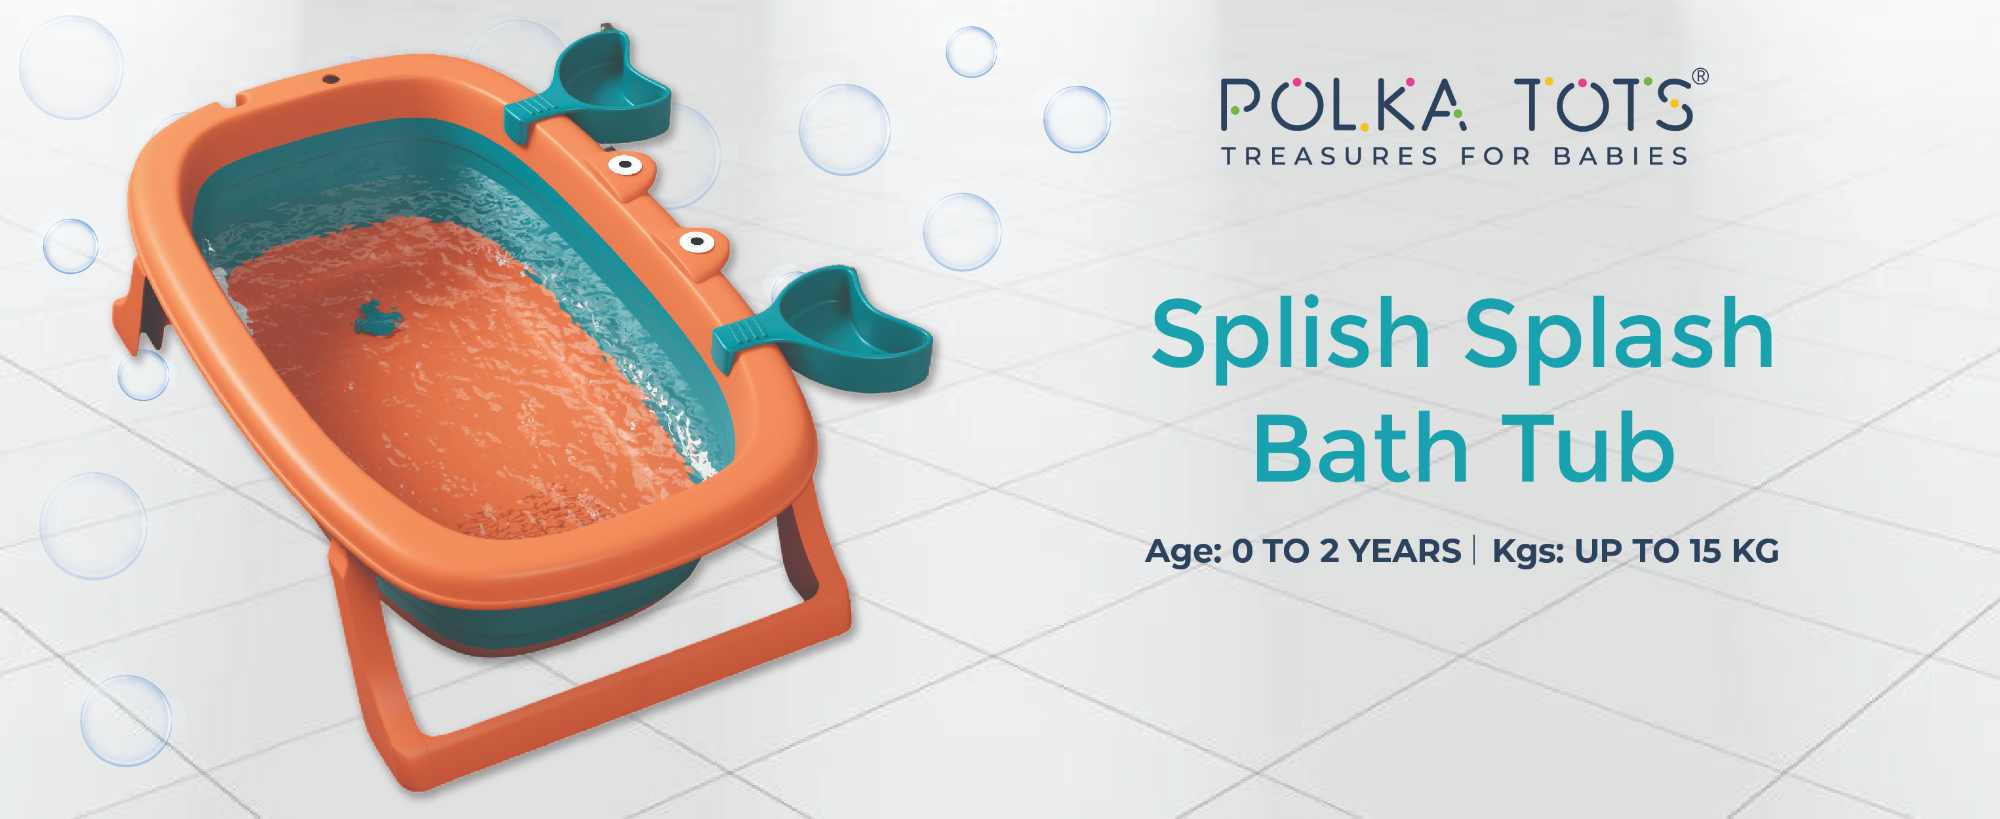 polka tots baby bath tub